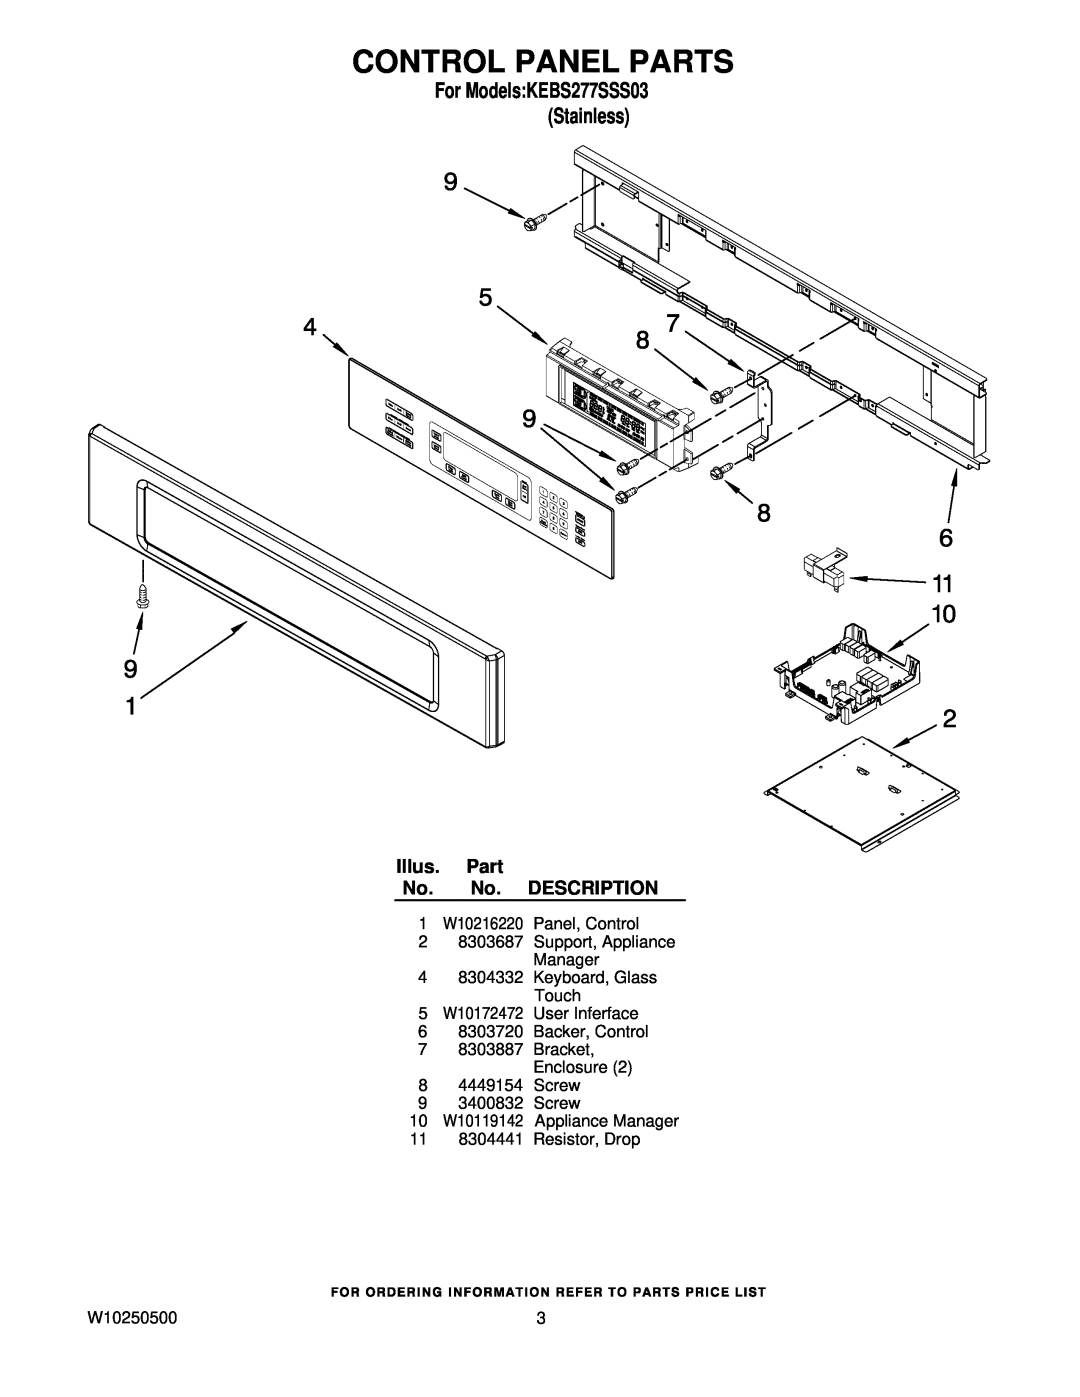 KitchenAid KEBS277SSS03 manual Control Panel Parts, Illus. Part No. No. DESCRIPTION, 11 8304441 Resistor, Drop, W10250500 